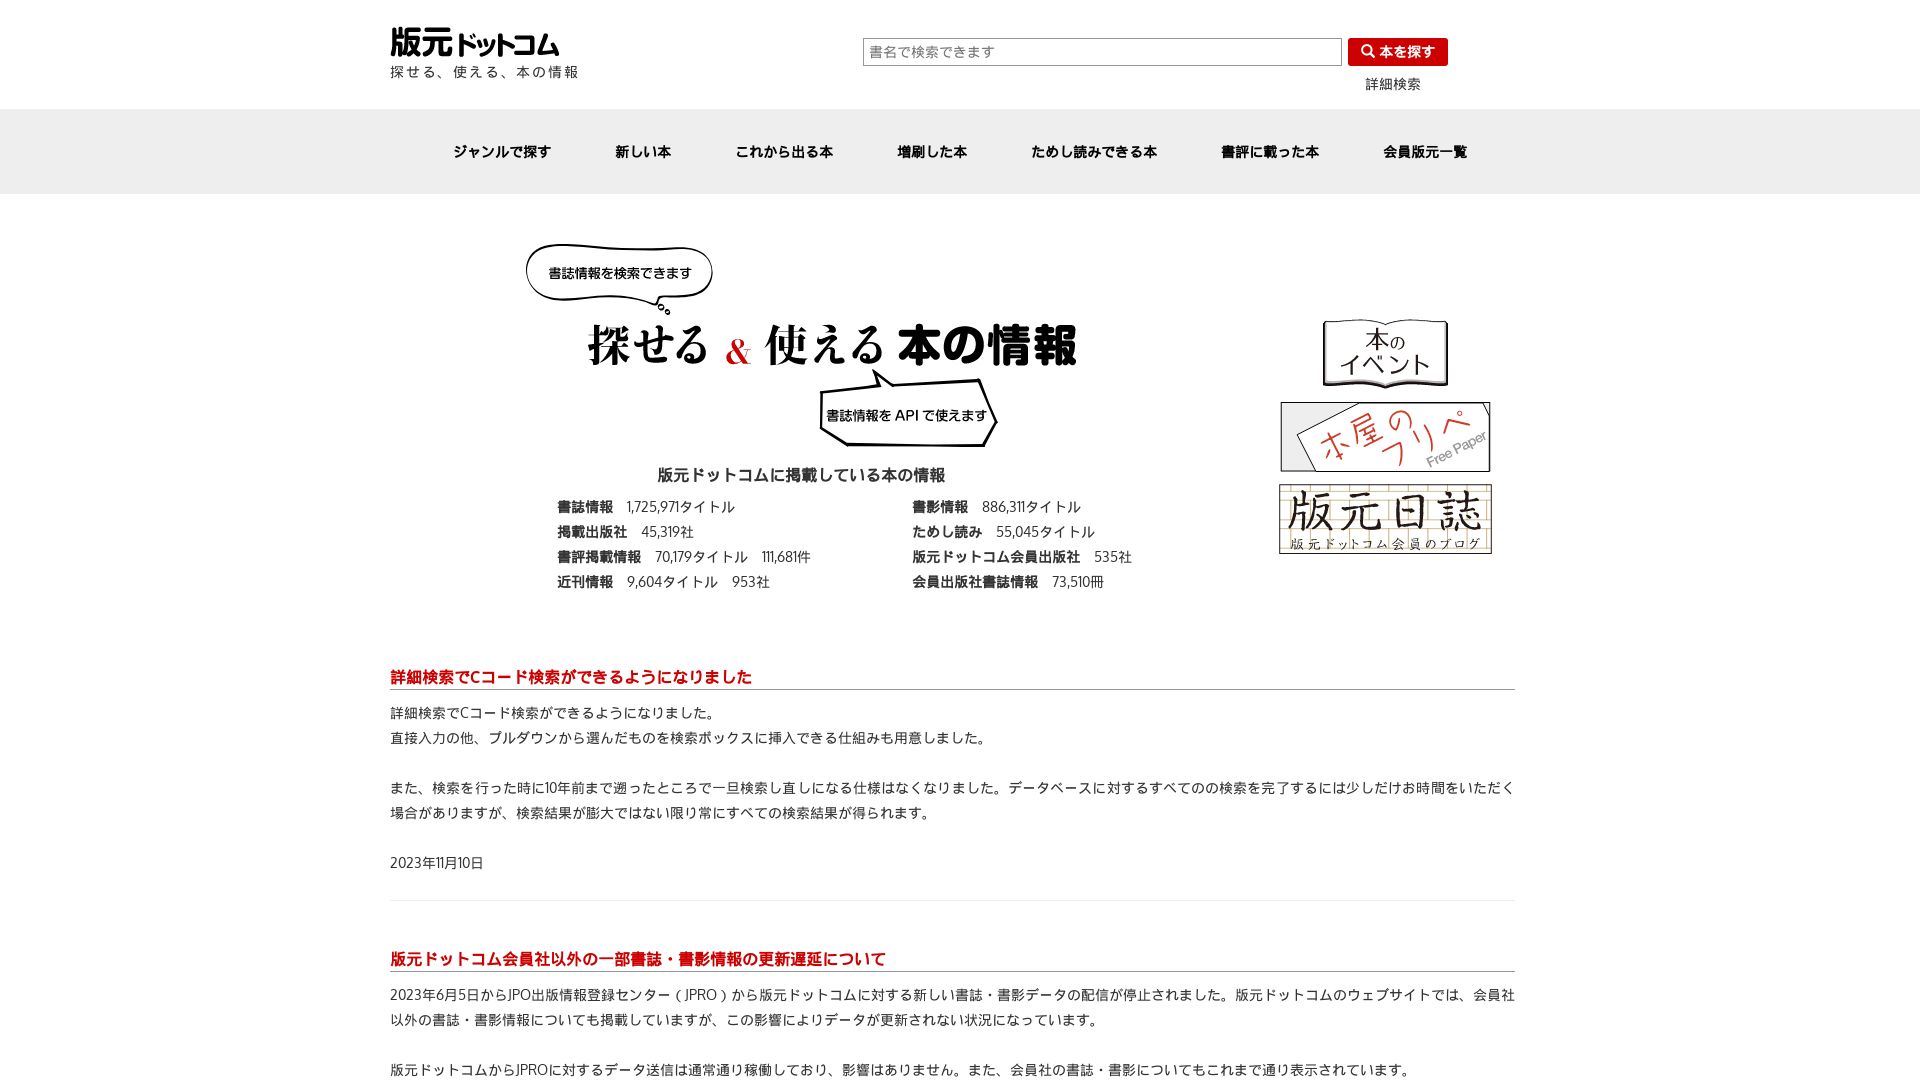 Status do site hanmoto.com está   ONLINE